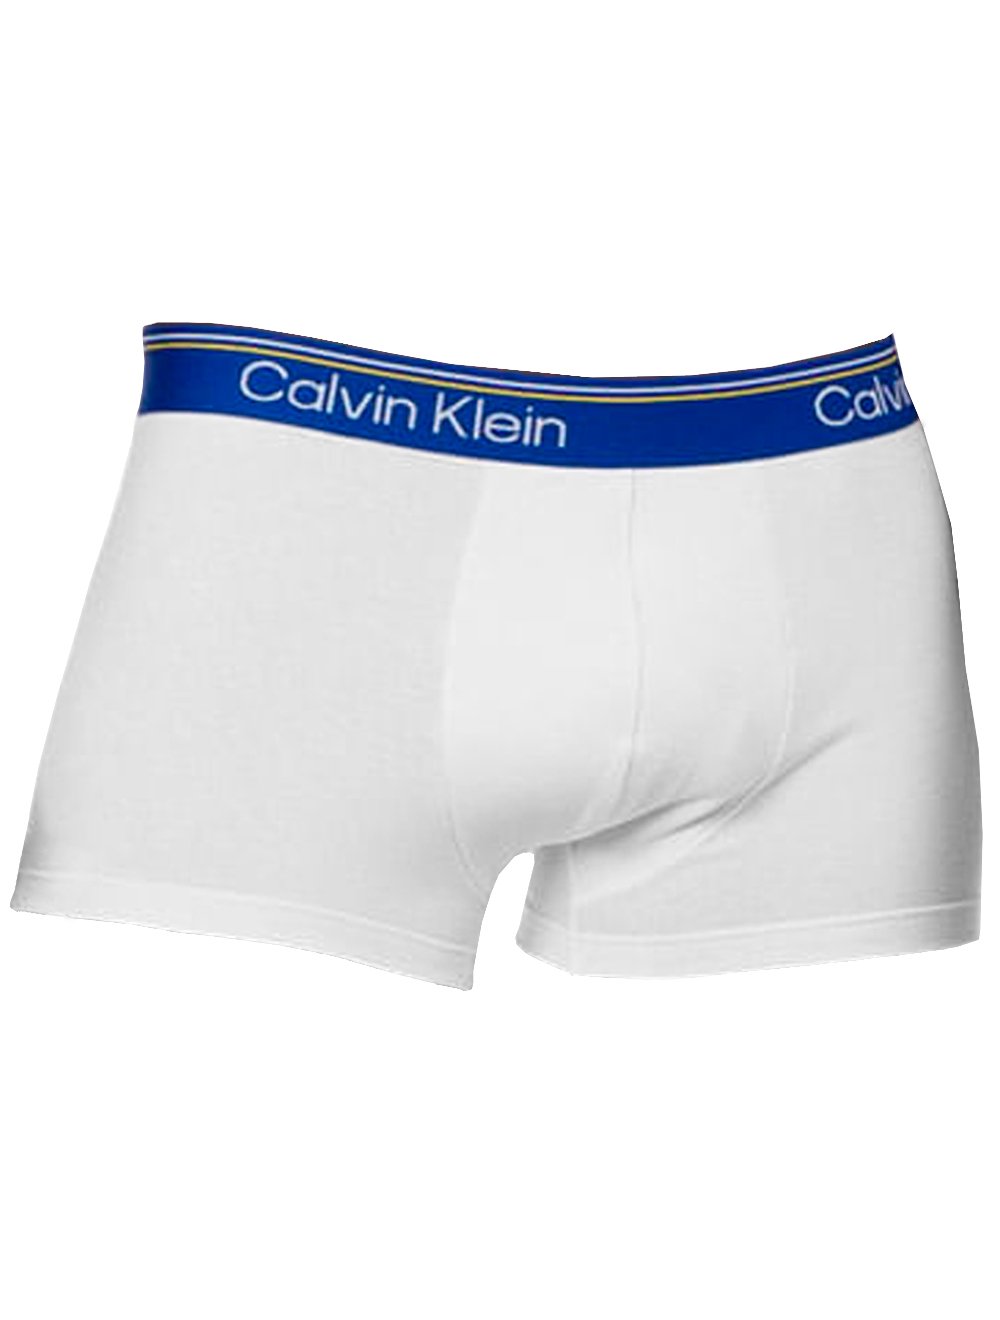 Cueca Calvin Klein Boxer Trunk World Cup Azul Escuro Branca 1UN